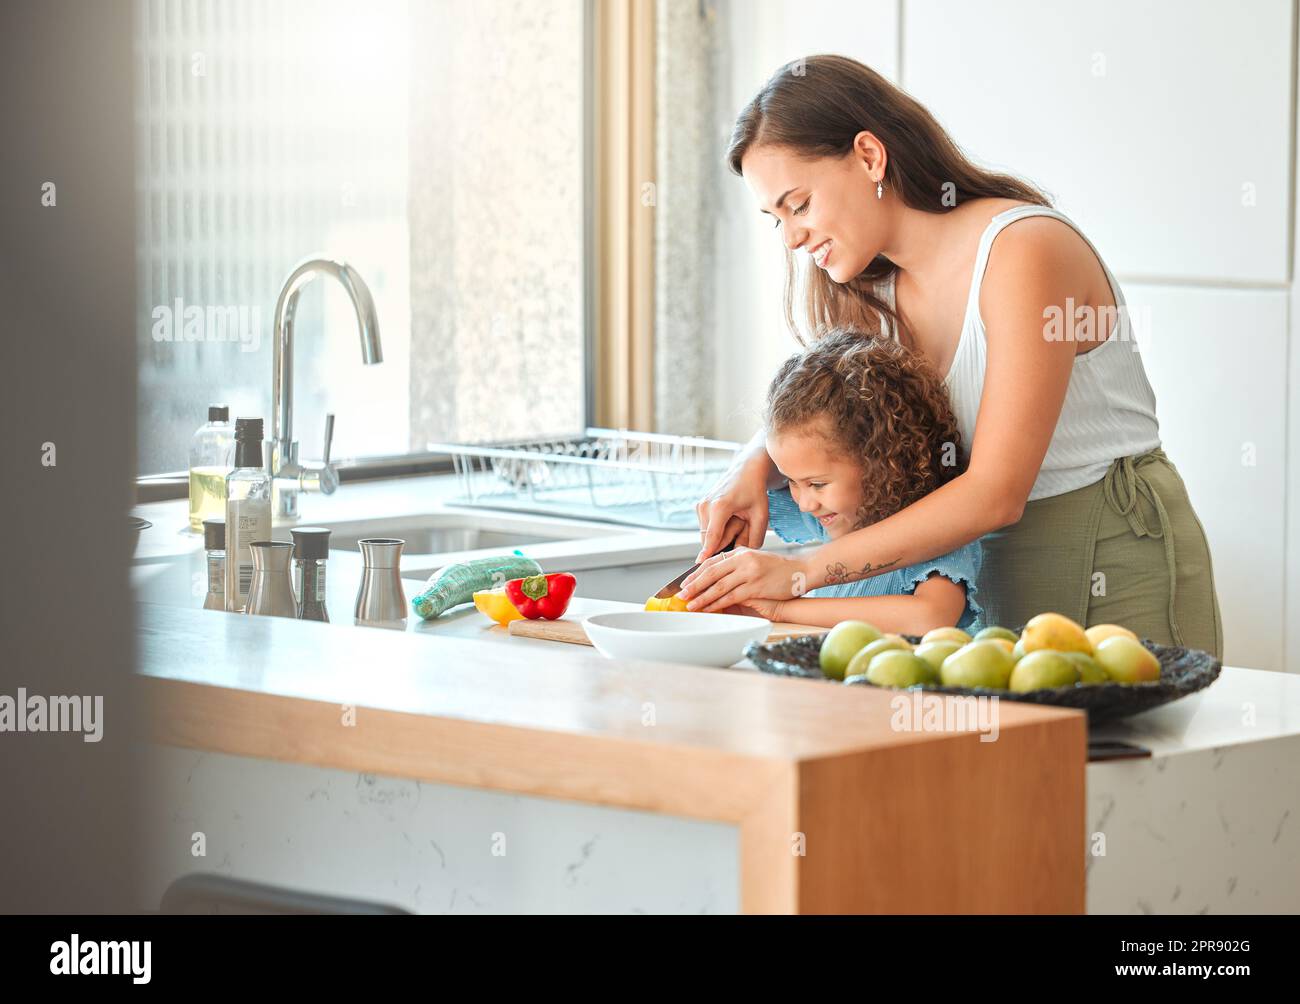 Madre cariñosa e hija pequeña que corta verduras y que prepara una ensalada en la cocina en casa. Vínculo de la niña con la madre mientras aprende a cocinar Foto de stock